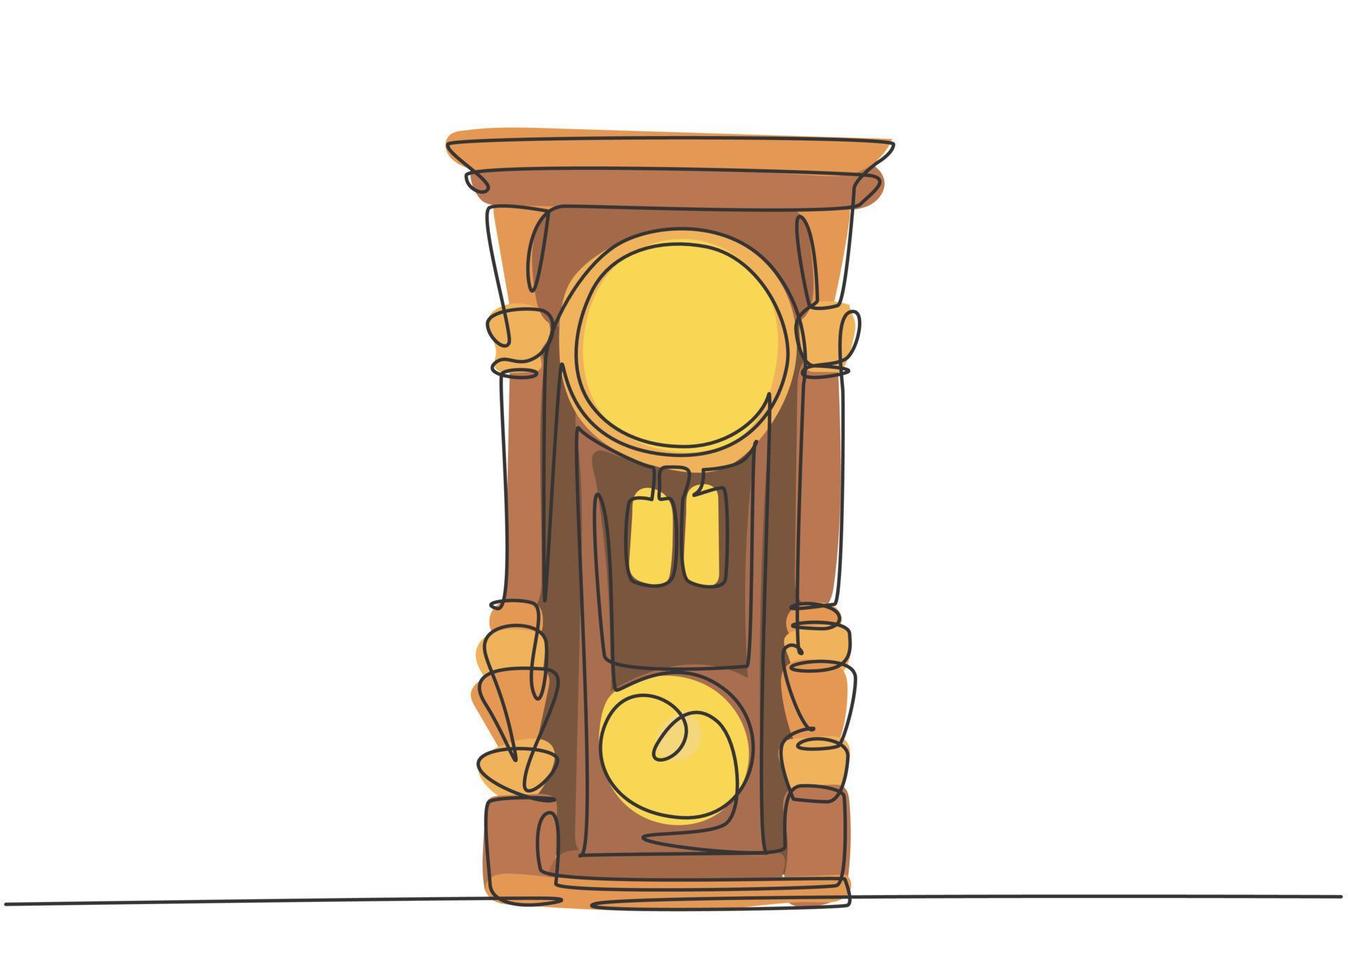 un dibujo de una sola línea de reloj de pared de madera clásico antiguo retro. Ilustración de vector de diseño de dibujo gráfico de línea continua concepto de elemento de reloj antiguo vintage